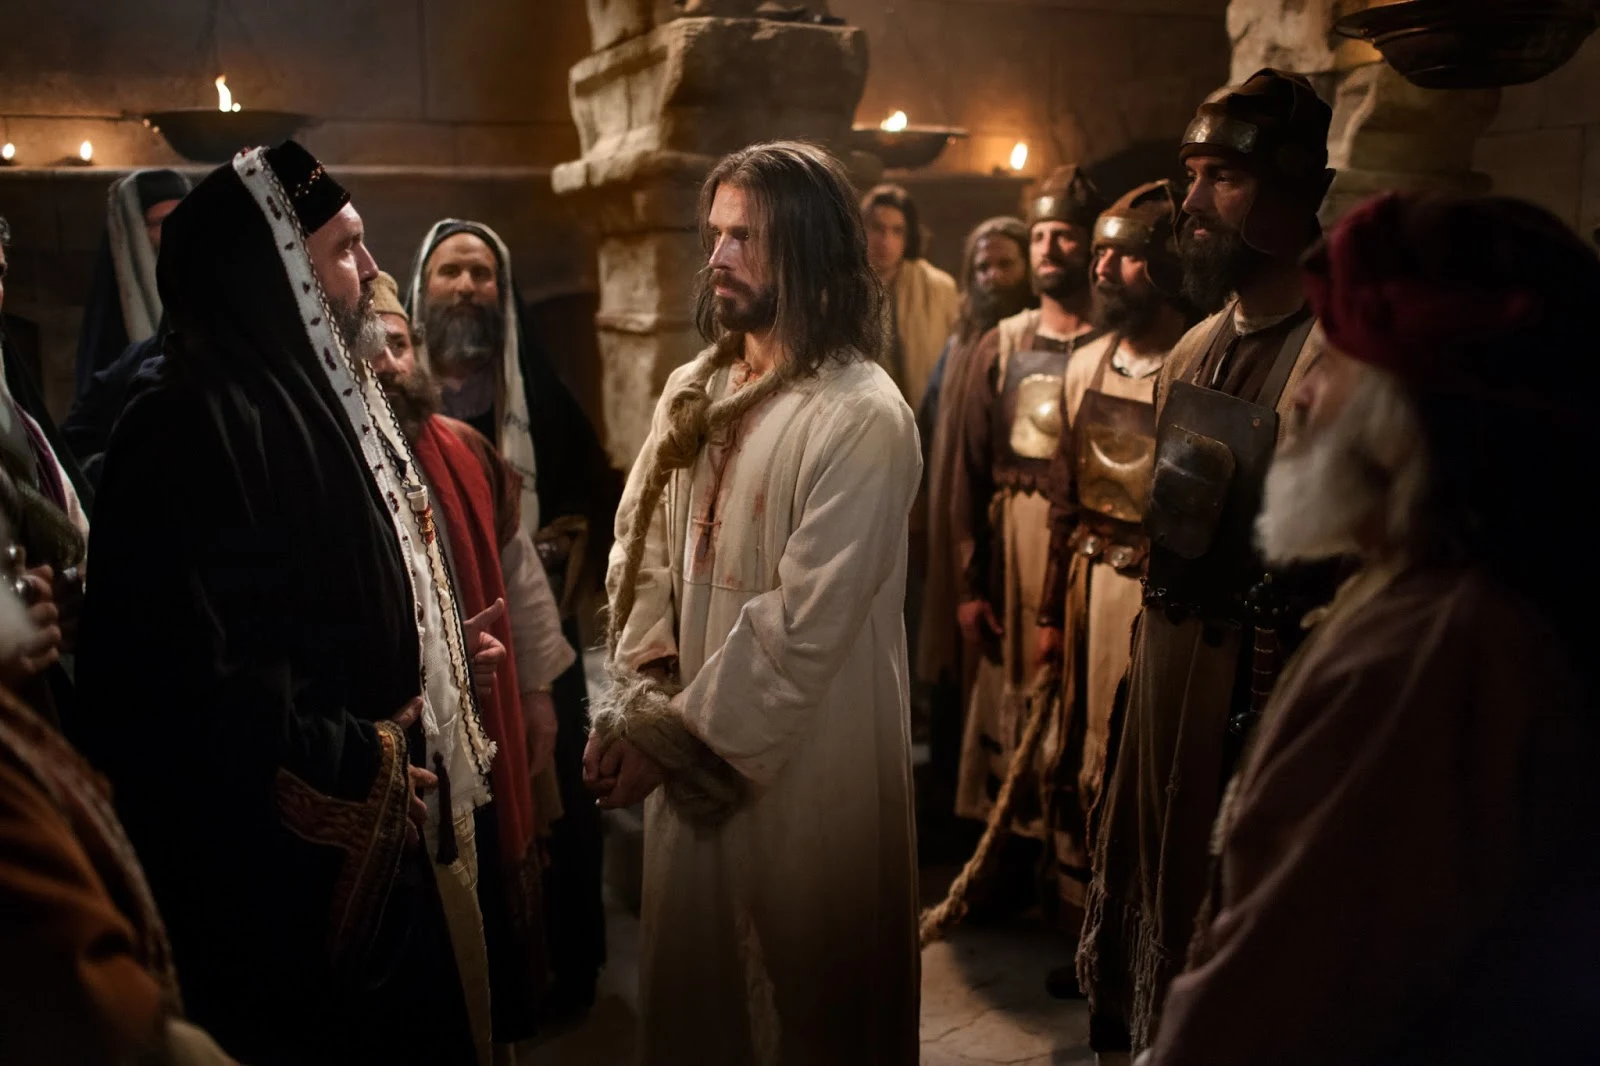 Cena de Jesus sendo julgado pelo sinédrio